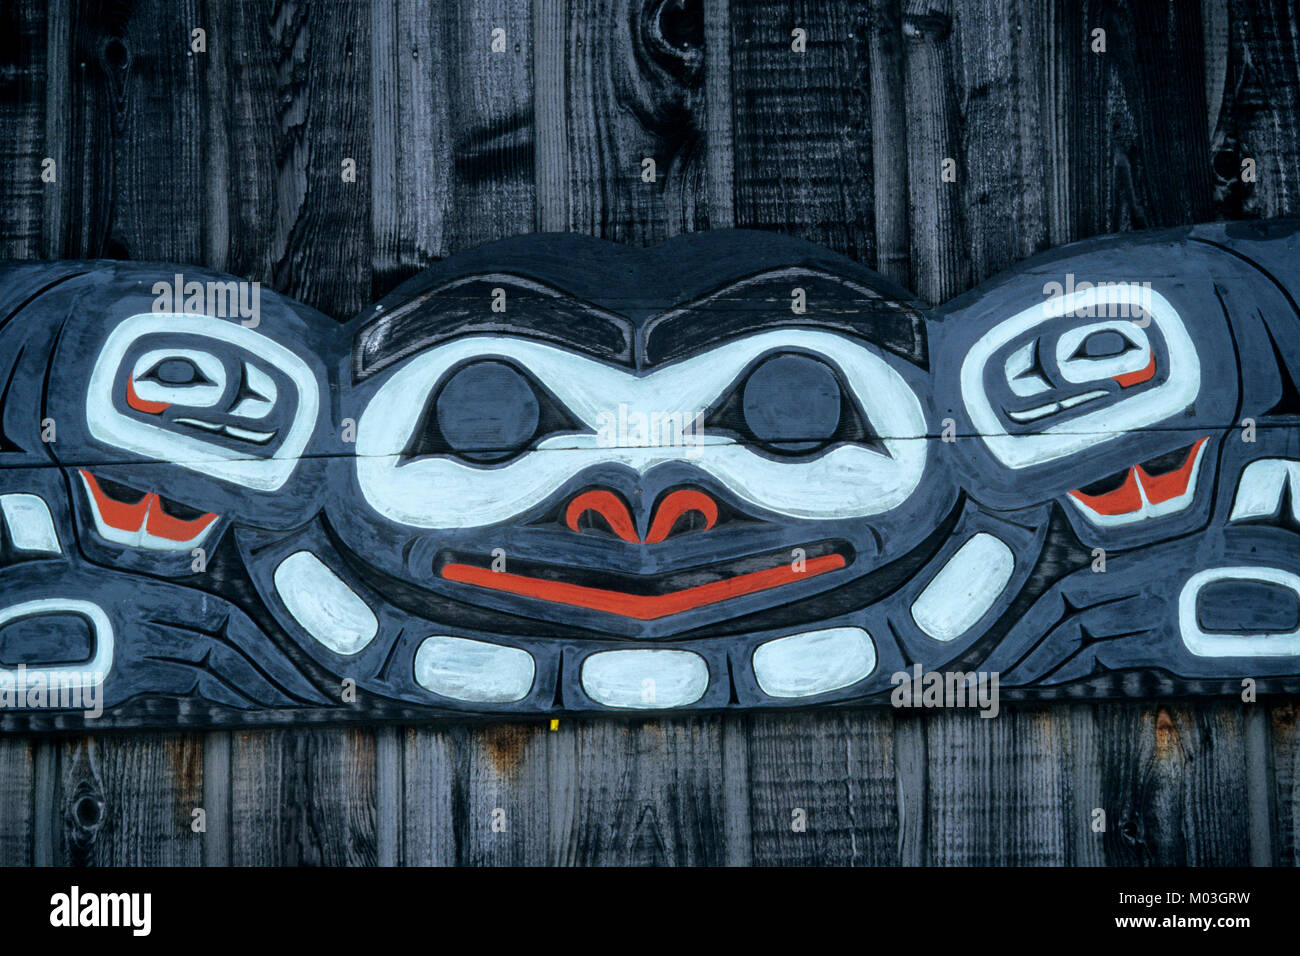 Le tlingit peintures, Haines, Alaska, USA / Indiens Tlingit | Gemaelde der Tlingit-Indianer, Haines, Alaska, USA Banque D'Images